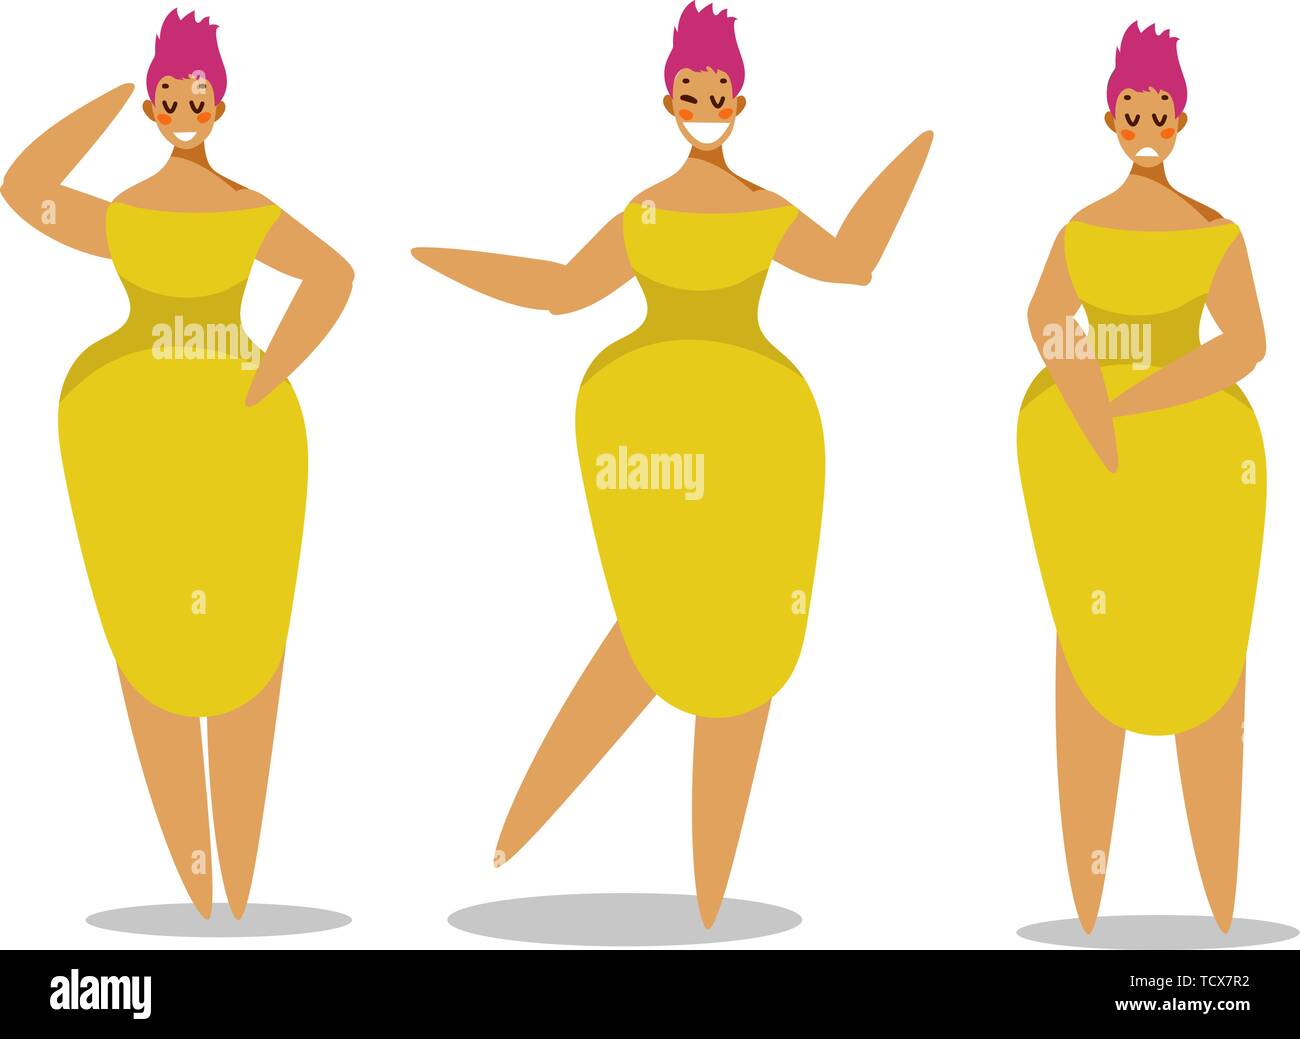 Einstellen der Frauen in eleganten Kleid in unterschiedlichen Posen. Zeichensatz für Ihr Projekt. Vector Illustration im flachen Stil. Stock Vektor